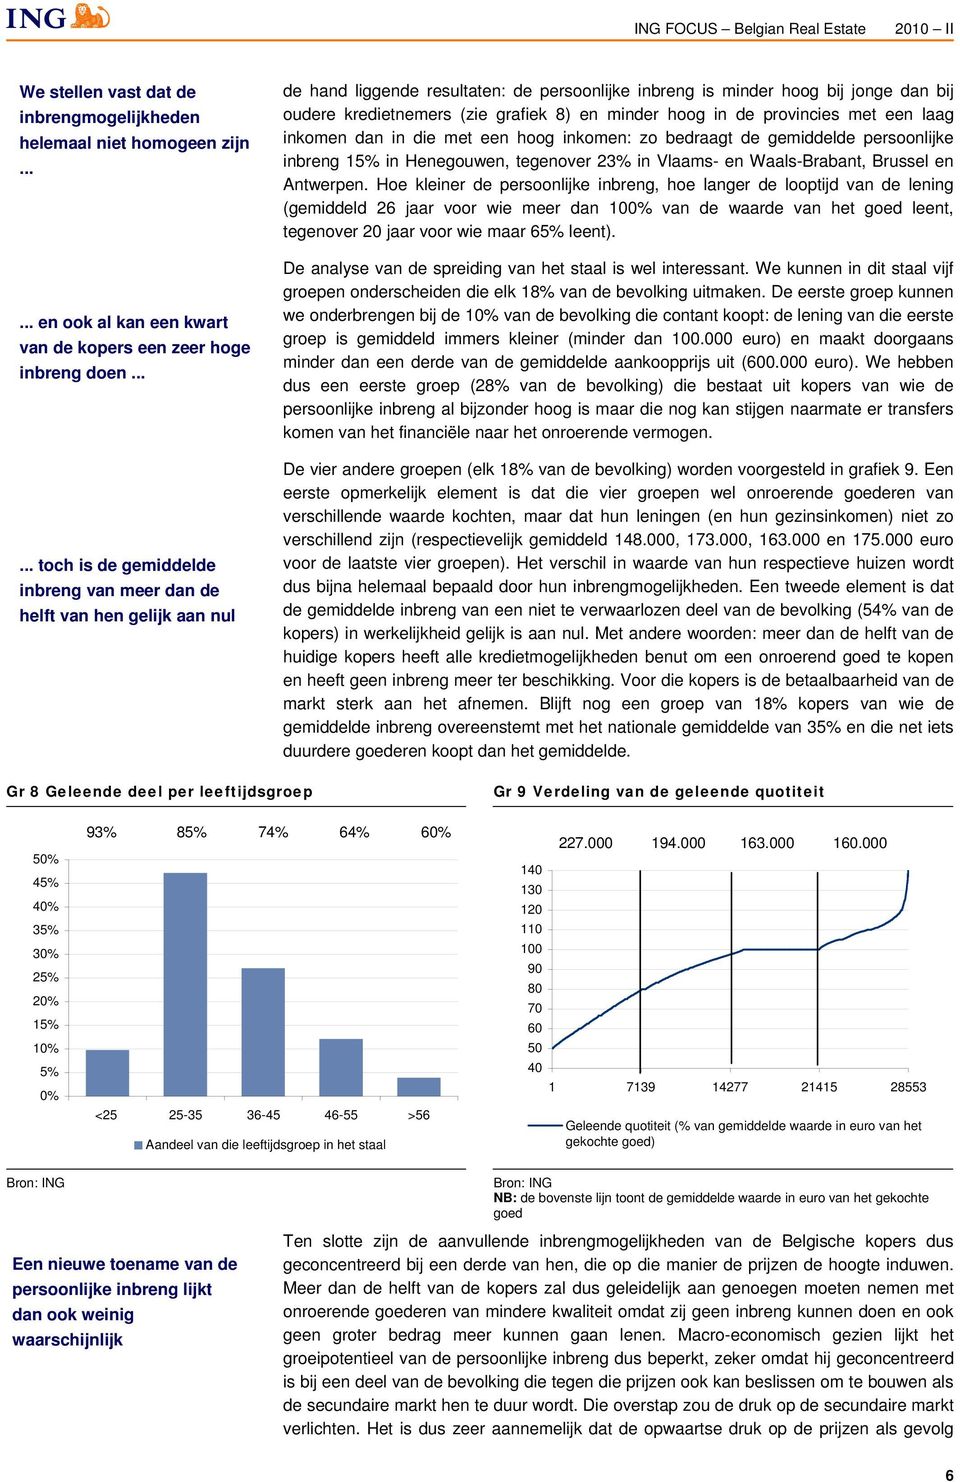 grafiek 8) en minder hoog in de provincies met een laag inkomen dan in die met een hoog inkomen: zo bedraagt de gemiddelde persoonlijke inbreng 15% in Henegouwen, tegenover 23% in Vlaams- en